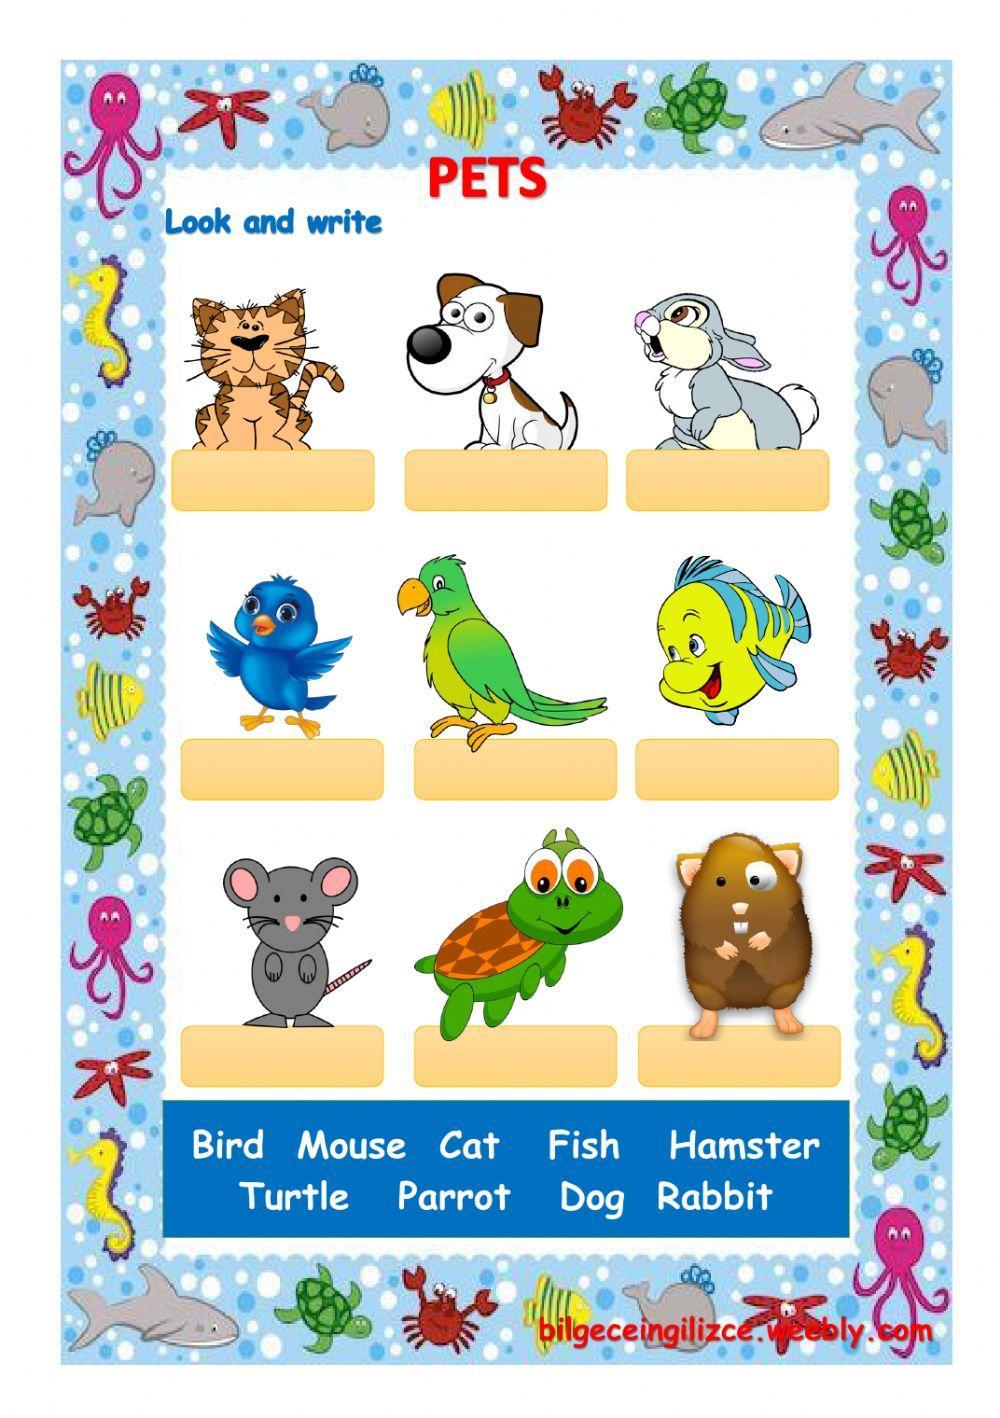 Pet tasks. Pets задания. Pets на английском для детей. Pets задания на английском. Задания по английскому для детей Pets.